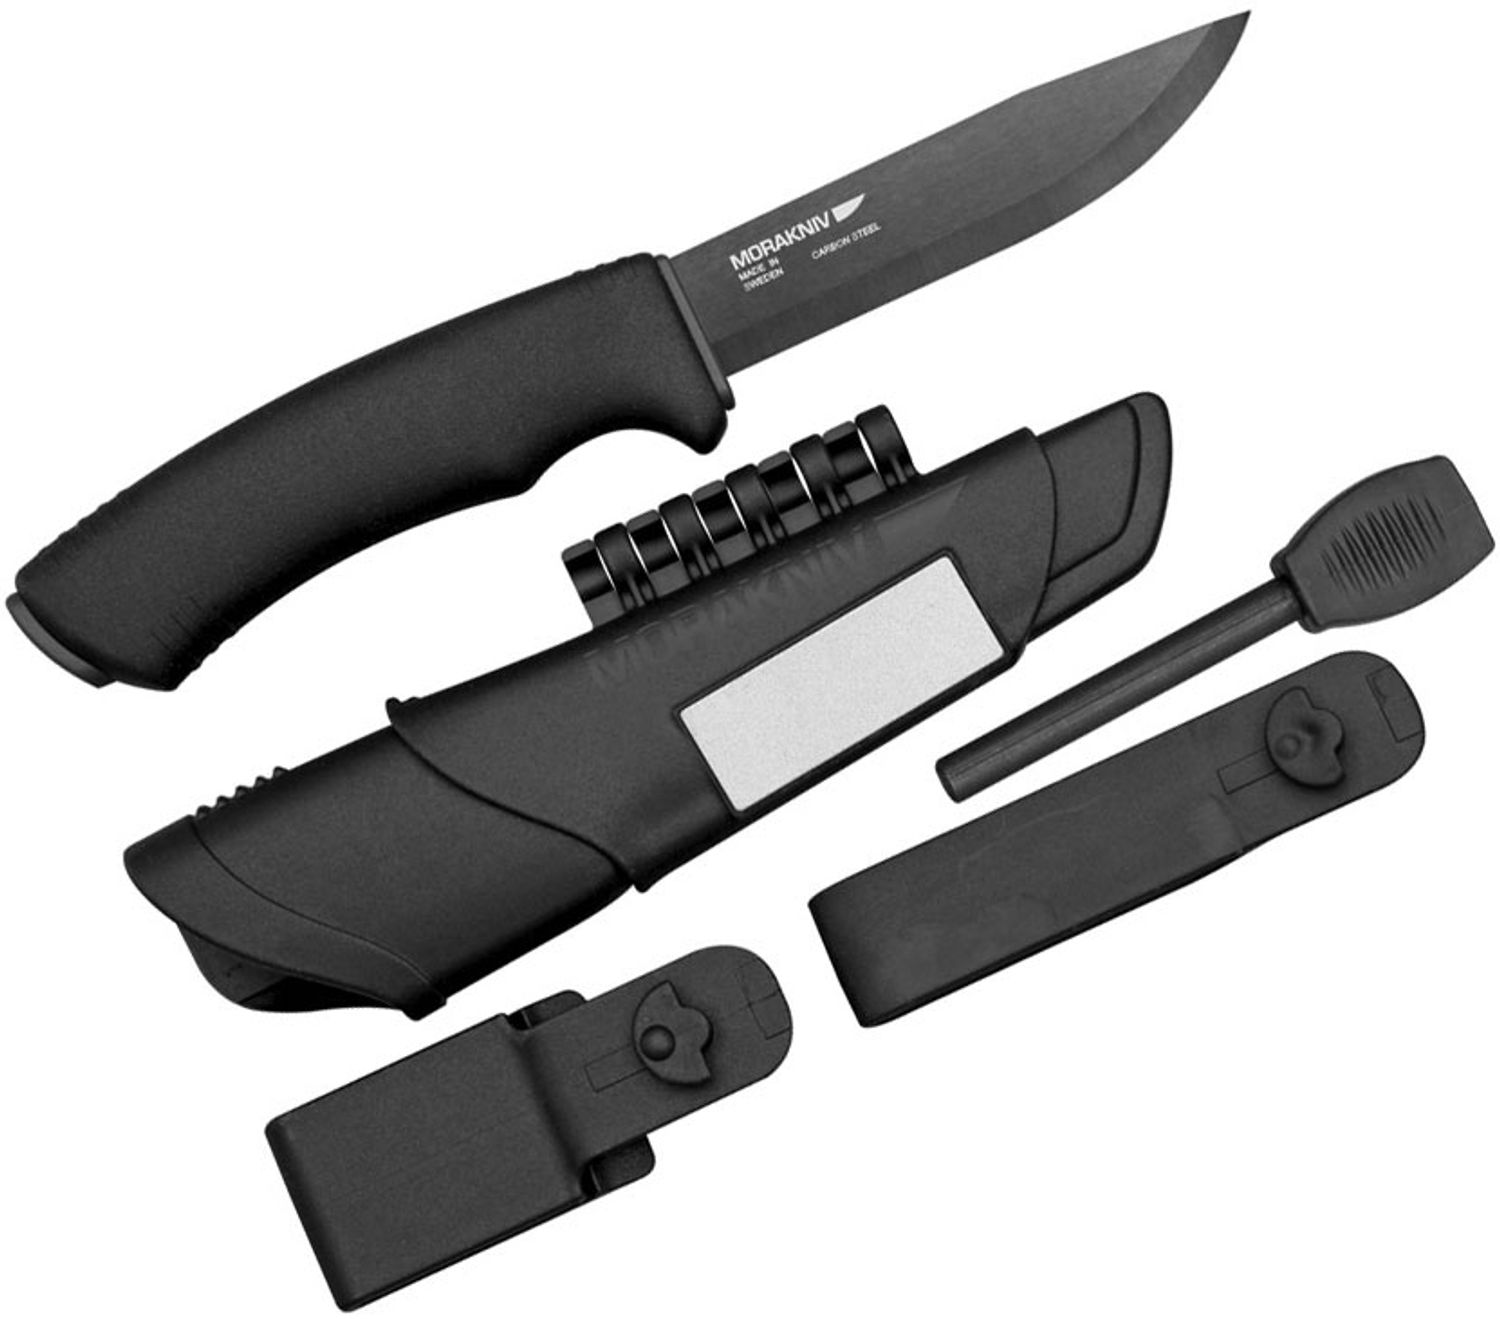 Morakniv Mora of Sweden Bushcraft Black Survival Knife 4.125 Black Carbon  Steel Blade, Fire Starter and Sheath, Black Rubberized Handle - KnifeCenter  - M-11742